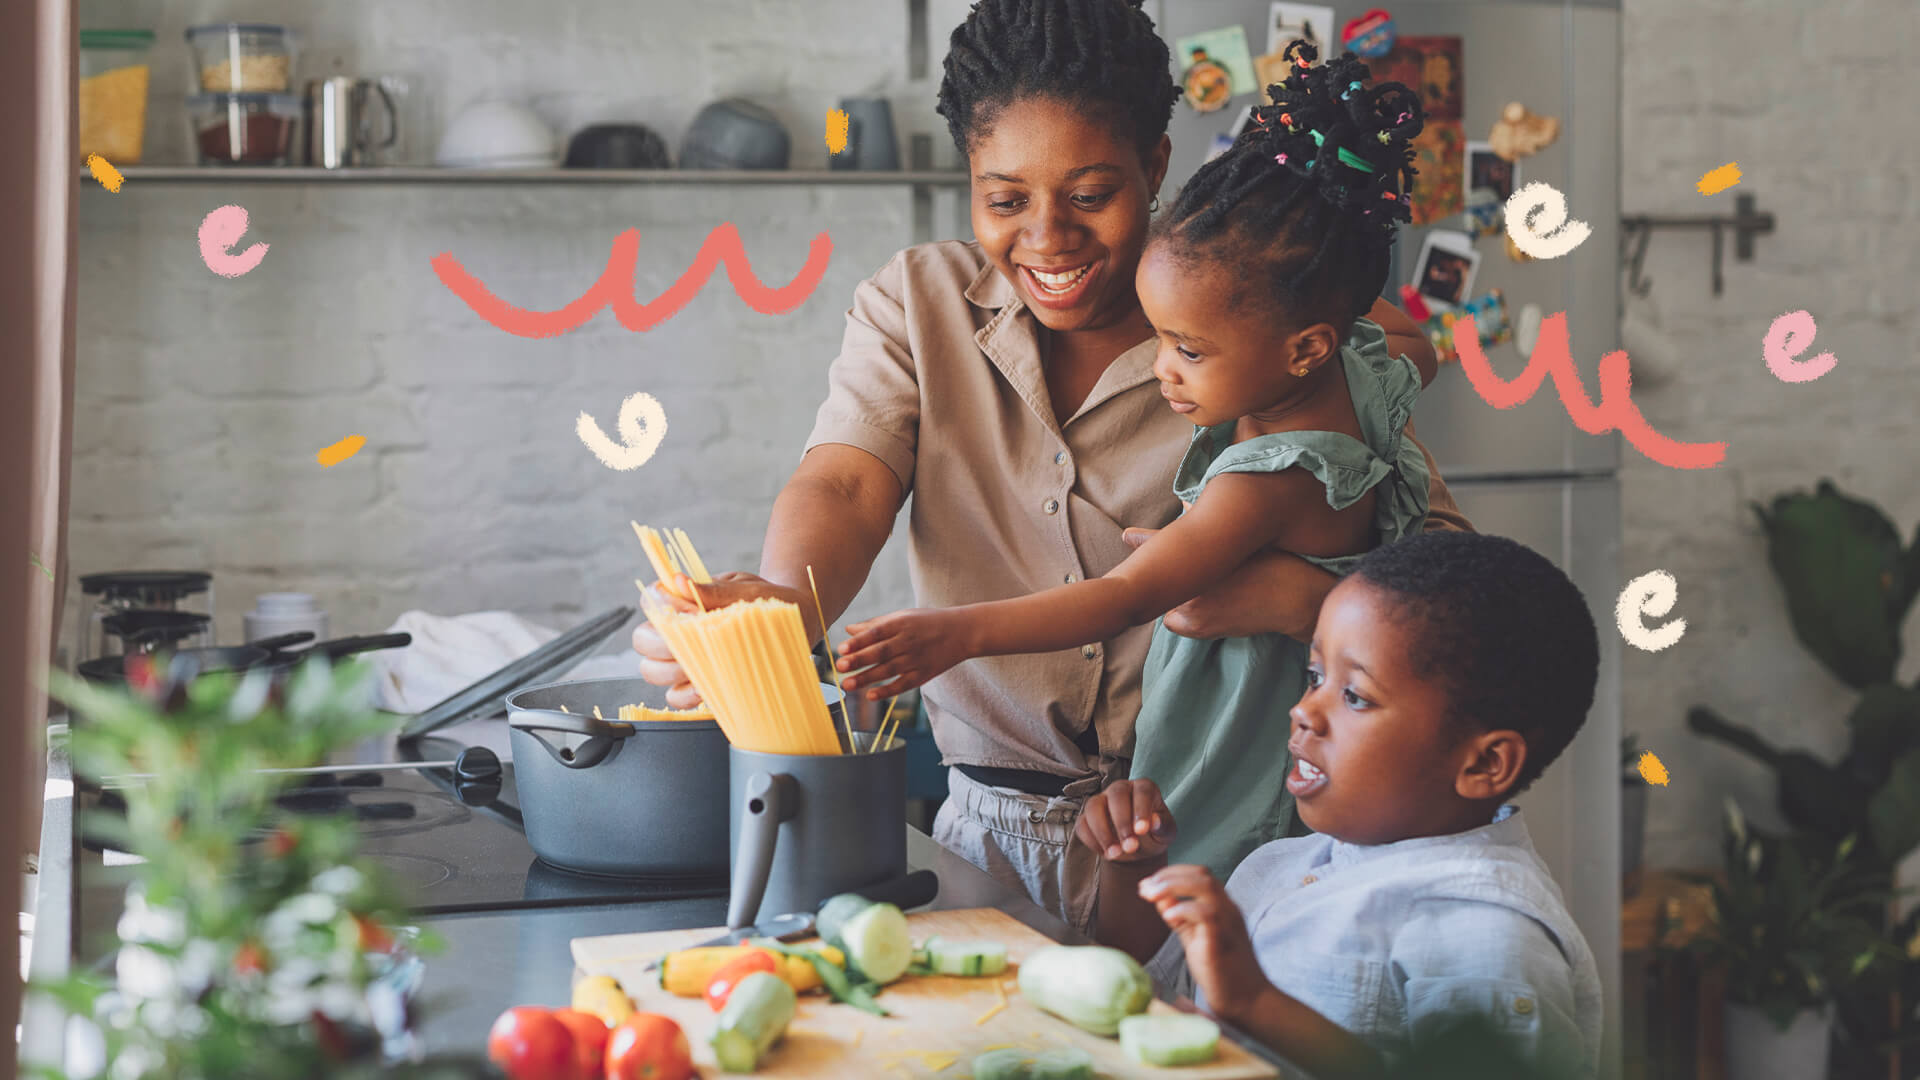 Foto de uma mulher cozinha em uma cozinha com um menino e uma menina. Ela mostra um livro de receitas para a menina enquanto o menino está em frente a uma tábua com vários legumes cortados